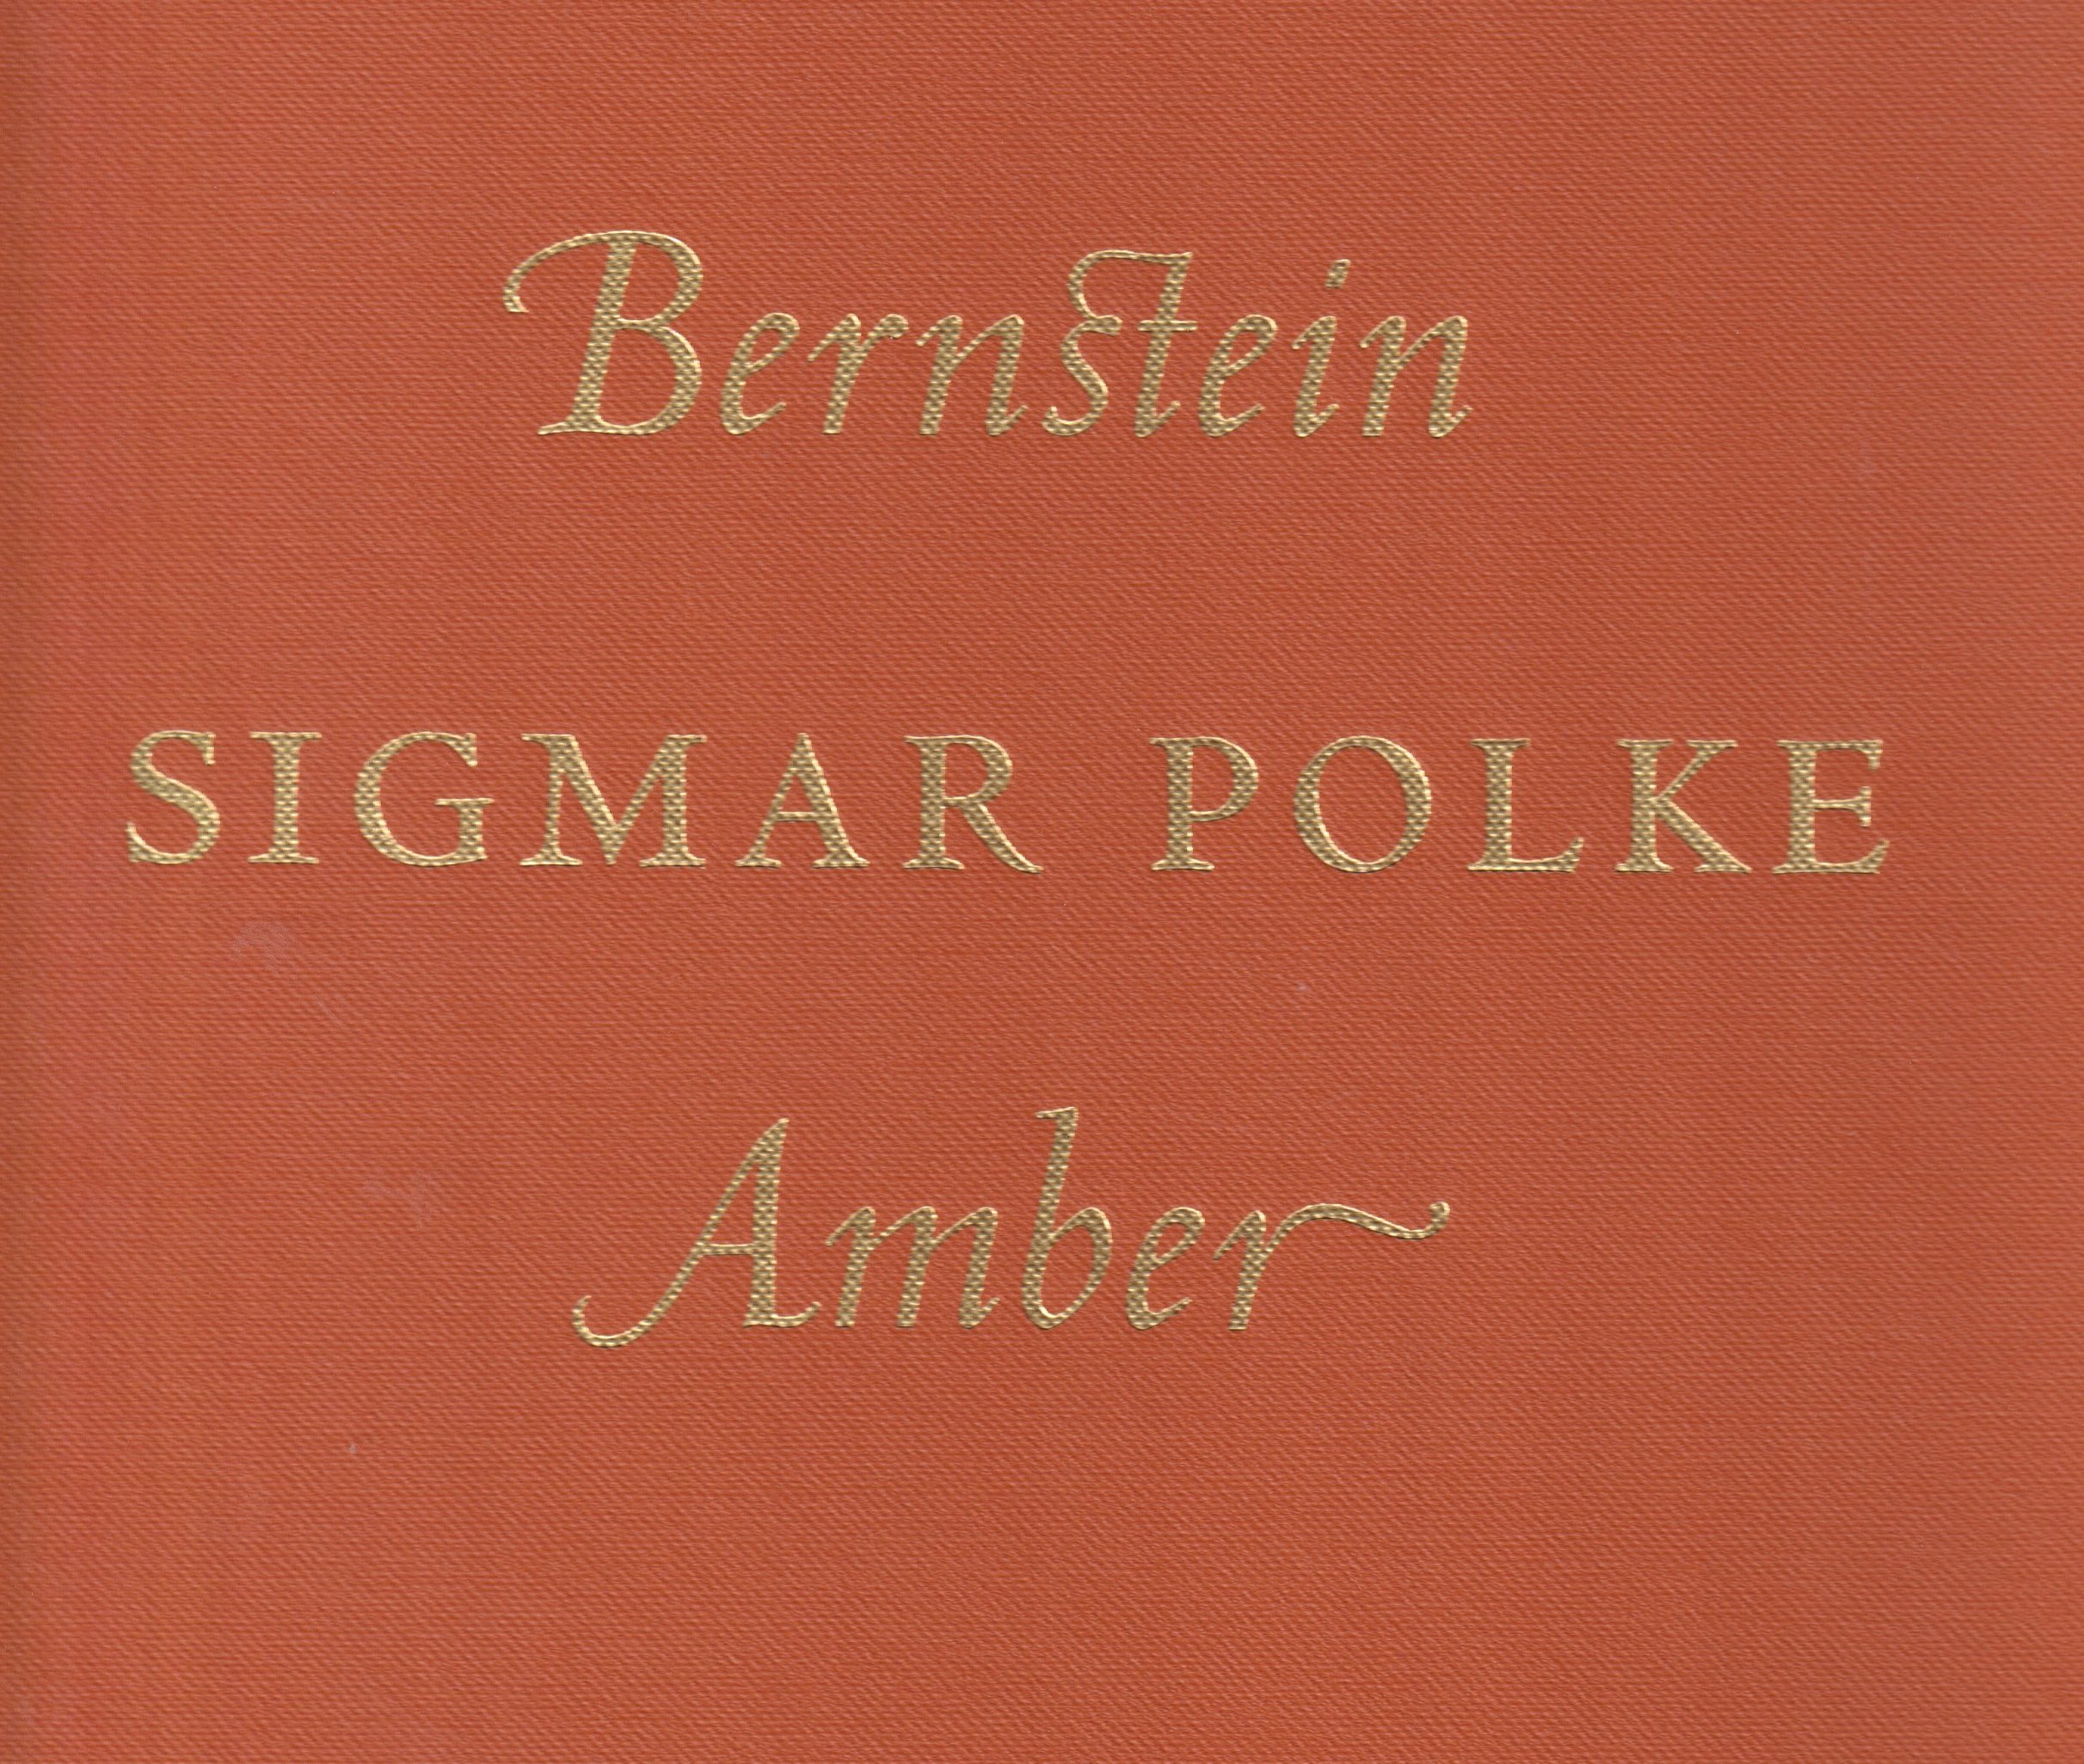 Sigmar Polke. Bernstein / Amber. [Michael Werner, New York/ Kunstkammer Georg Laue, München]. - Causey, Faya/ Georg Laue/ Sigmar Polke;